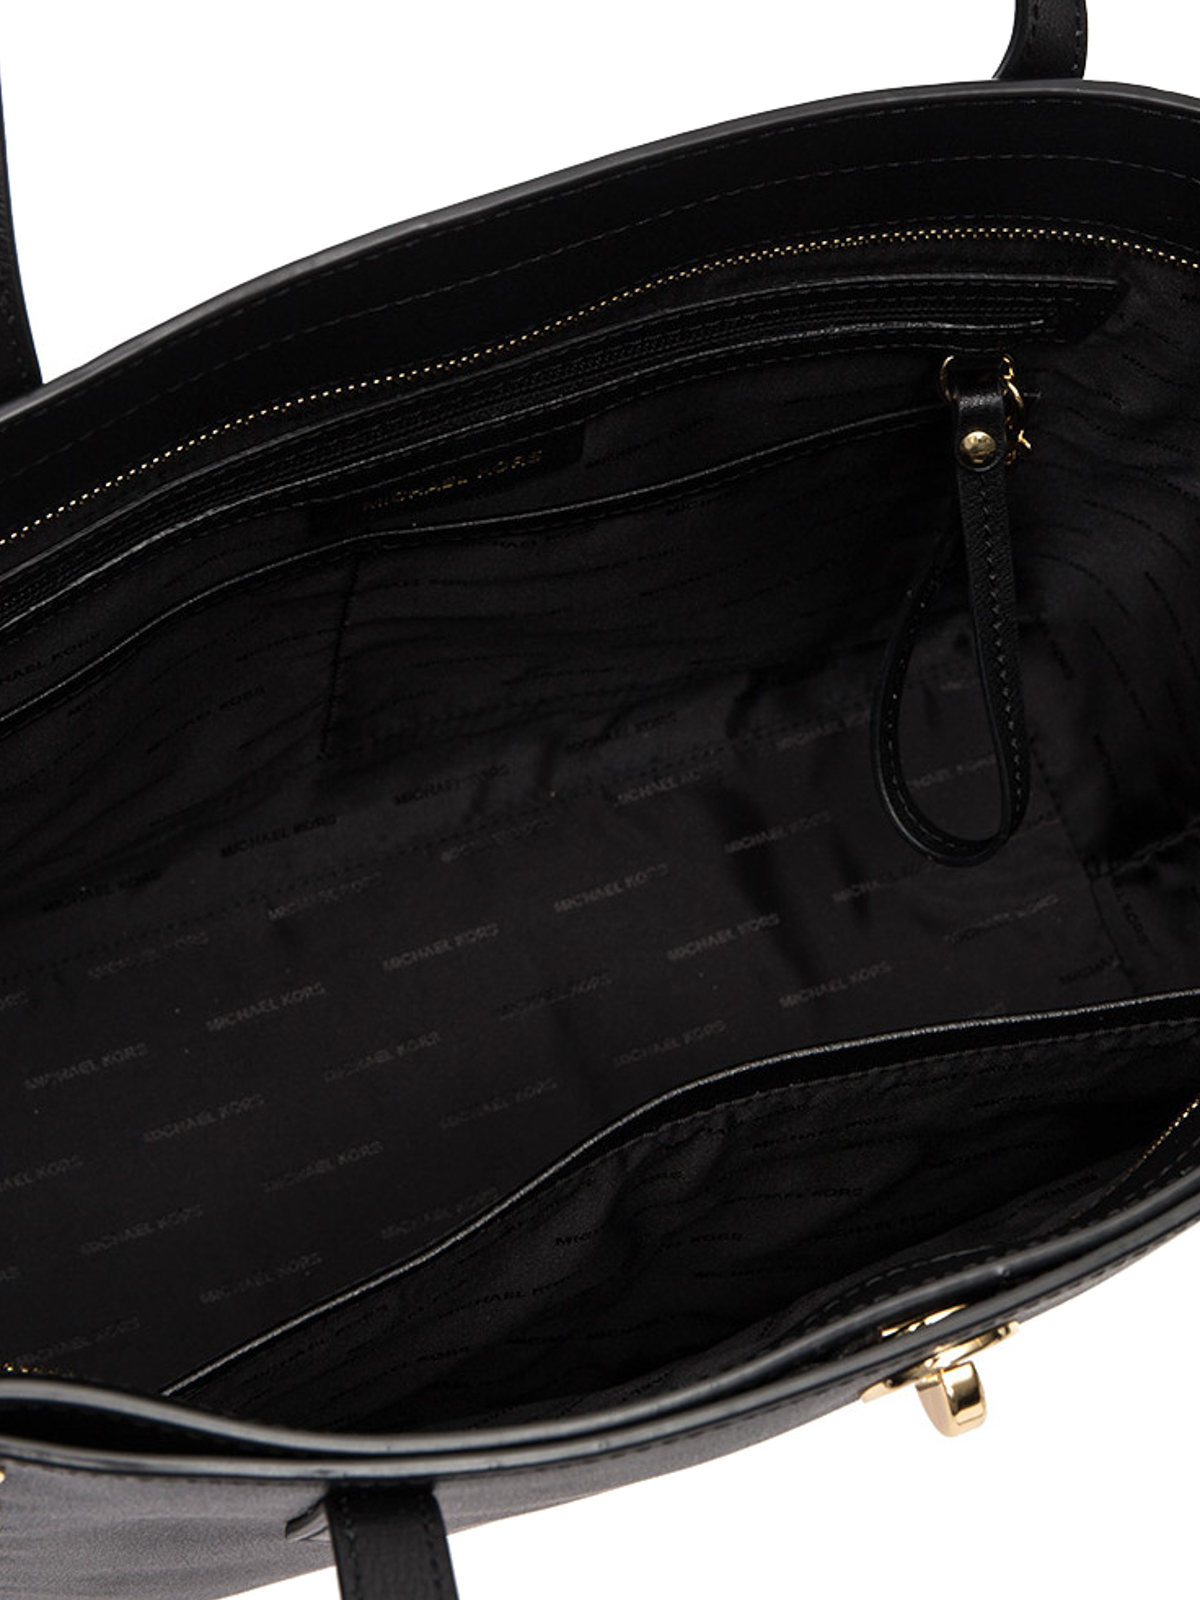 Totes bags Michael Kors - Rivington large studded tote - 30S7SR7T3L001